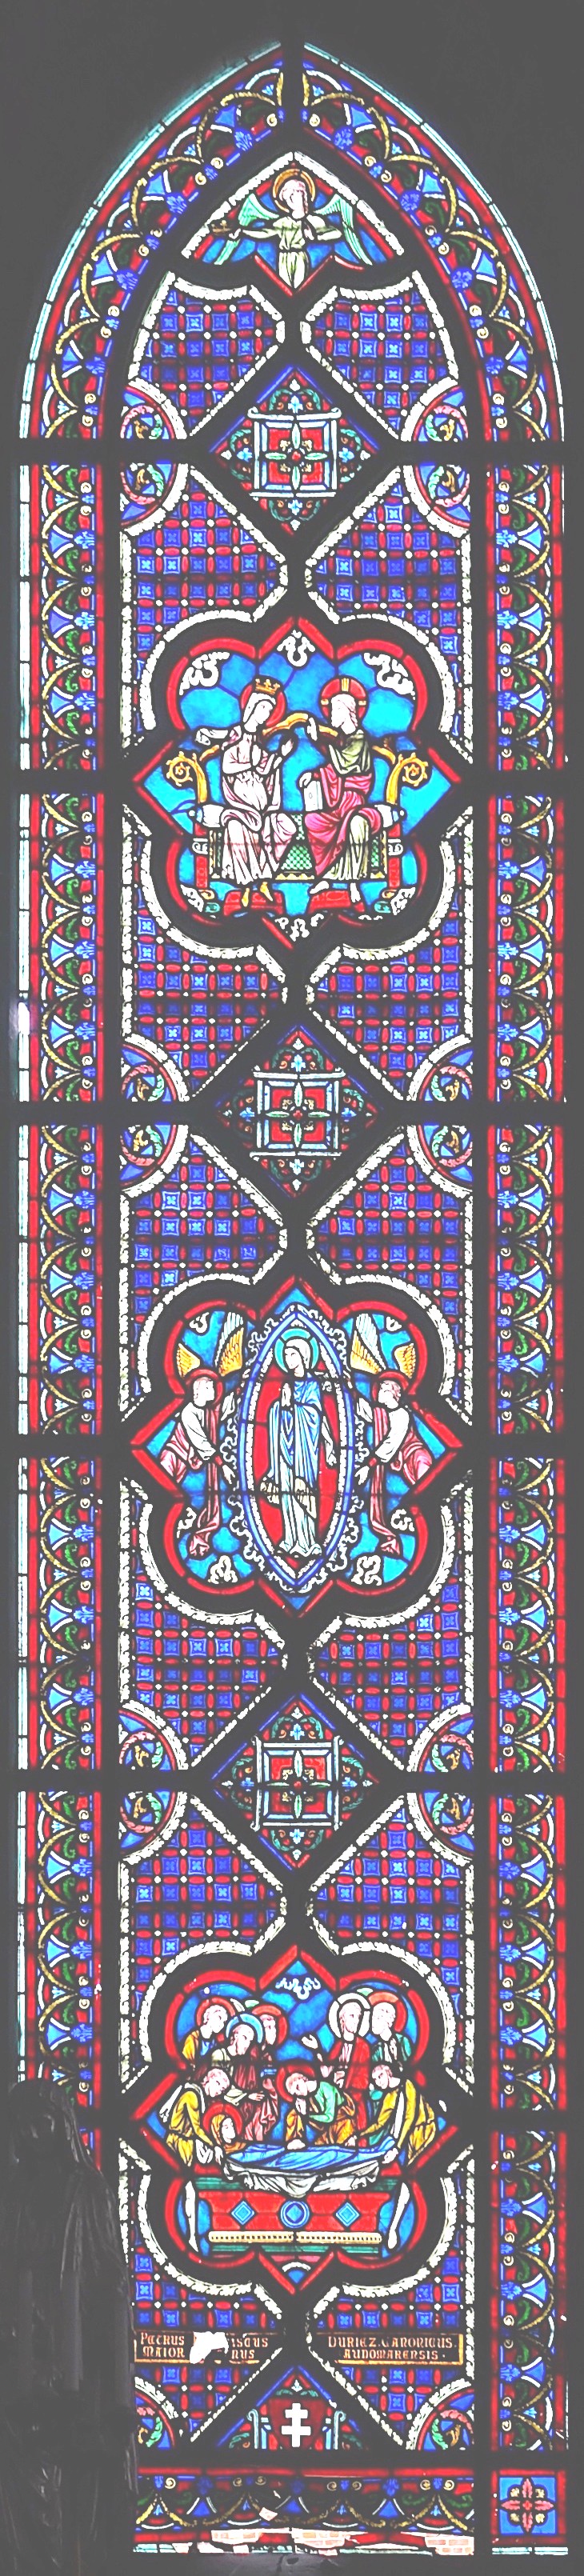 B0 - vitraux de la chapelle épiscopale saint-omer